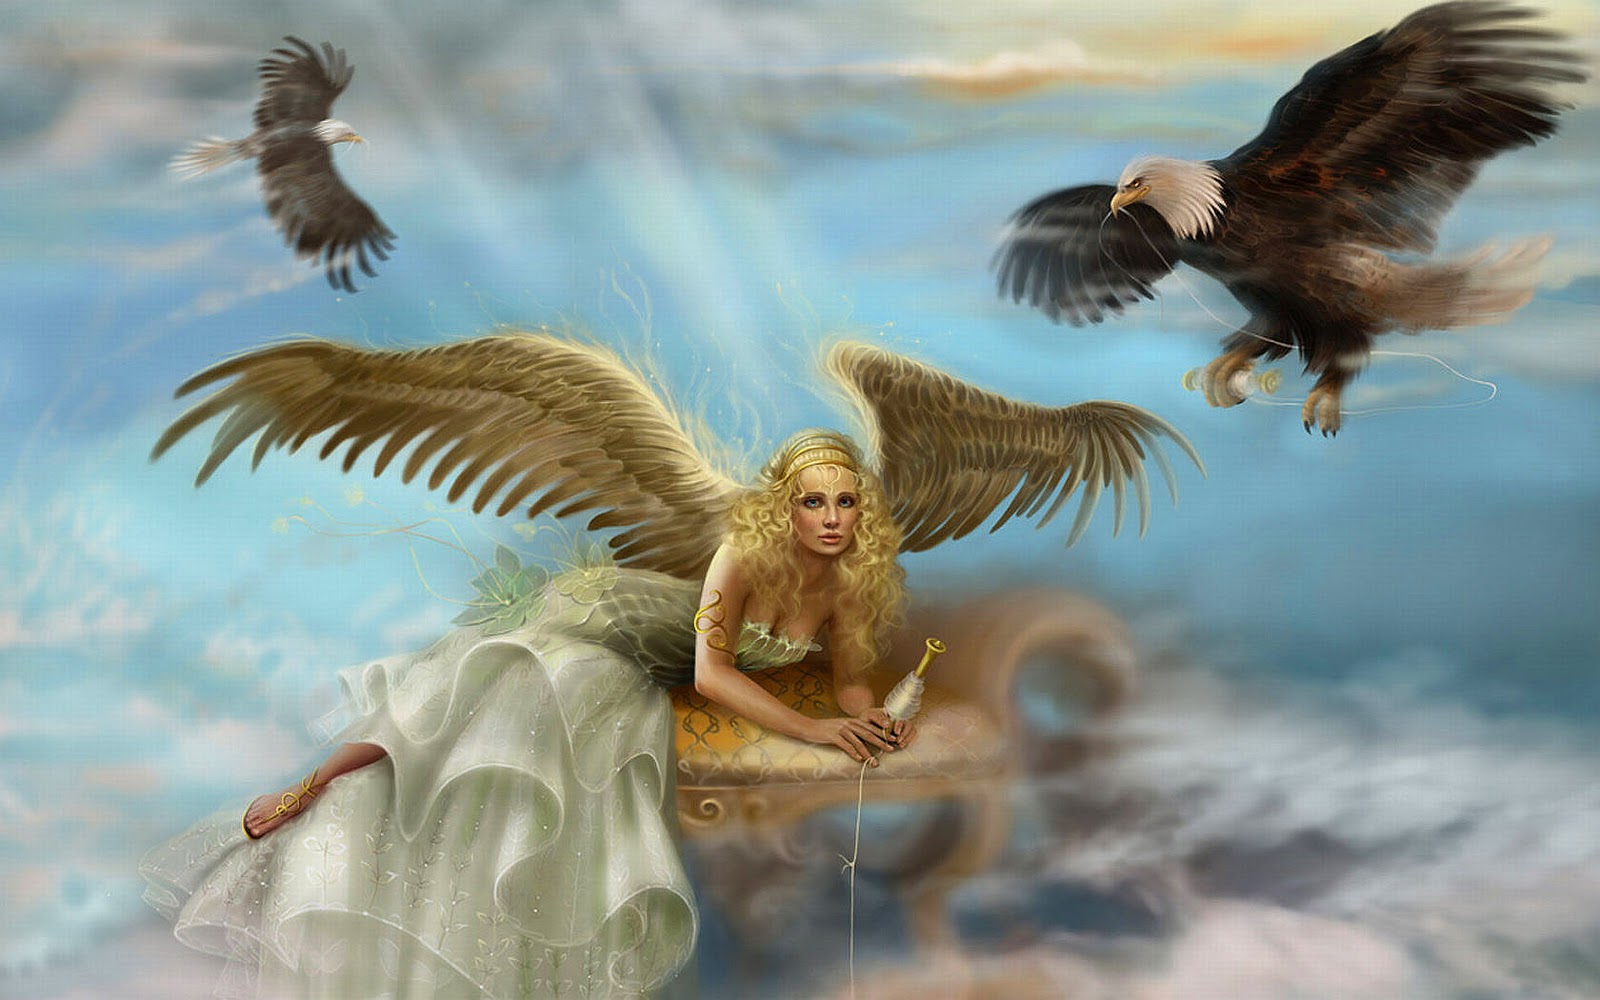 천사 바탕 화면,천사,신화학,초자연적 생물,날개,하늘